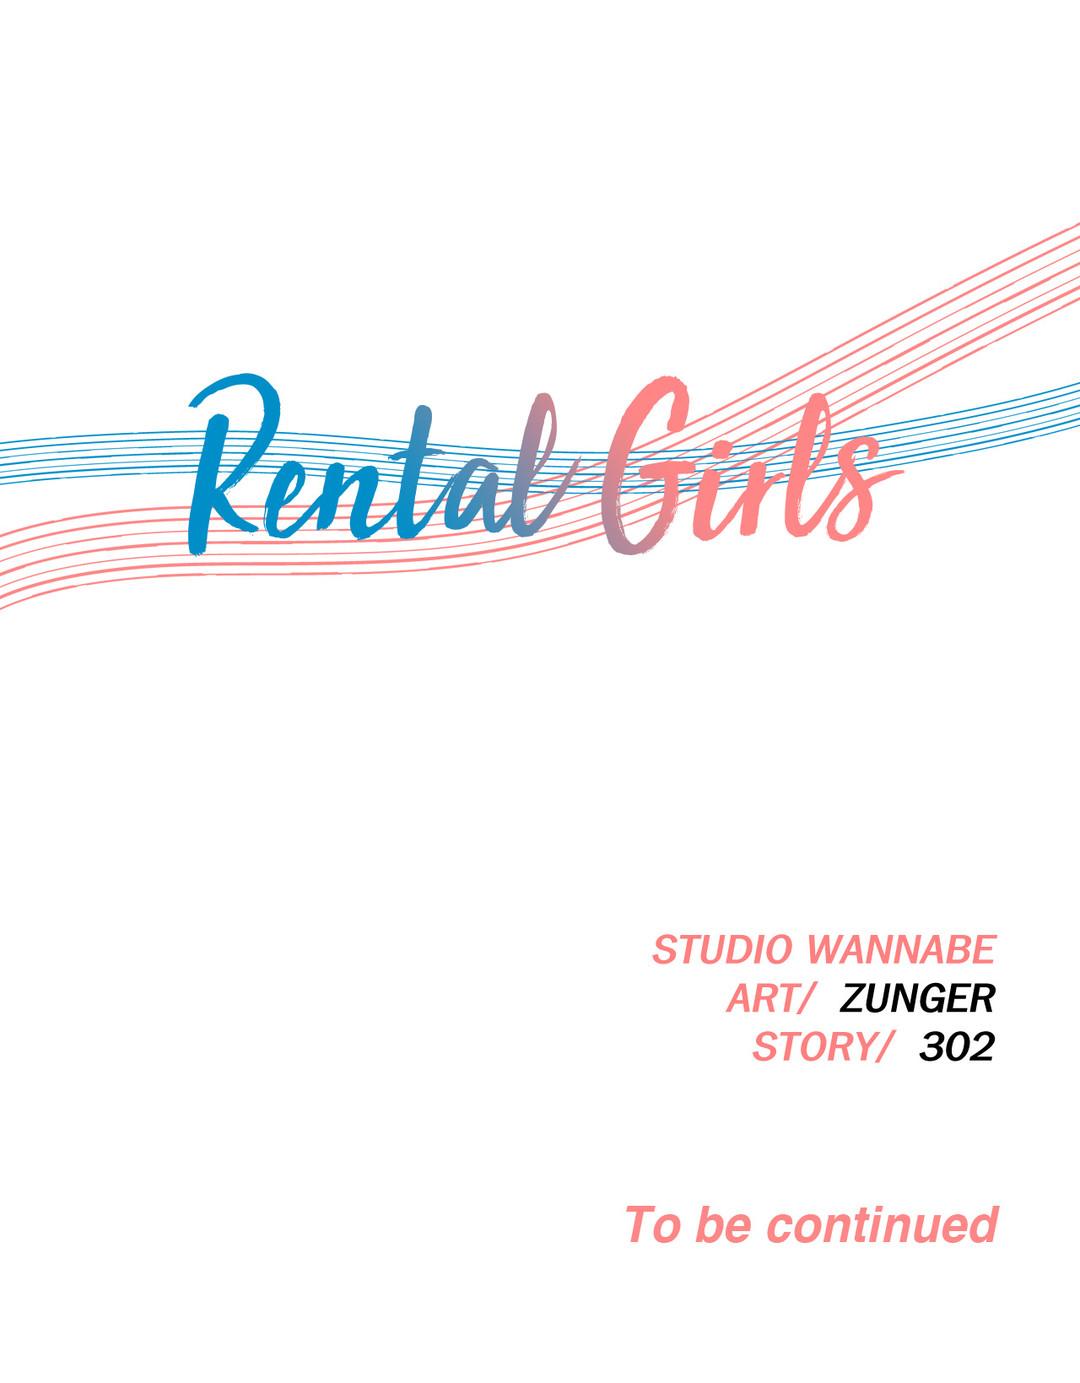 Rental Girls Ch 4 - 6 27